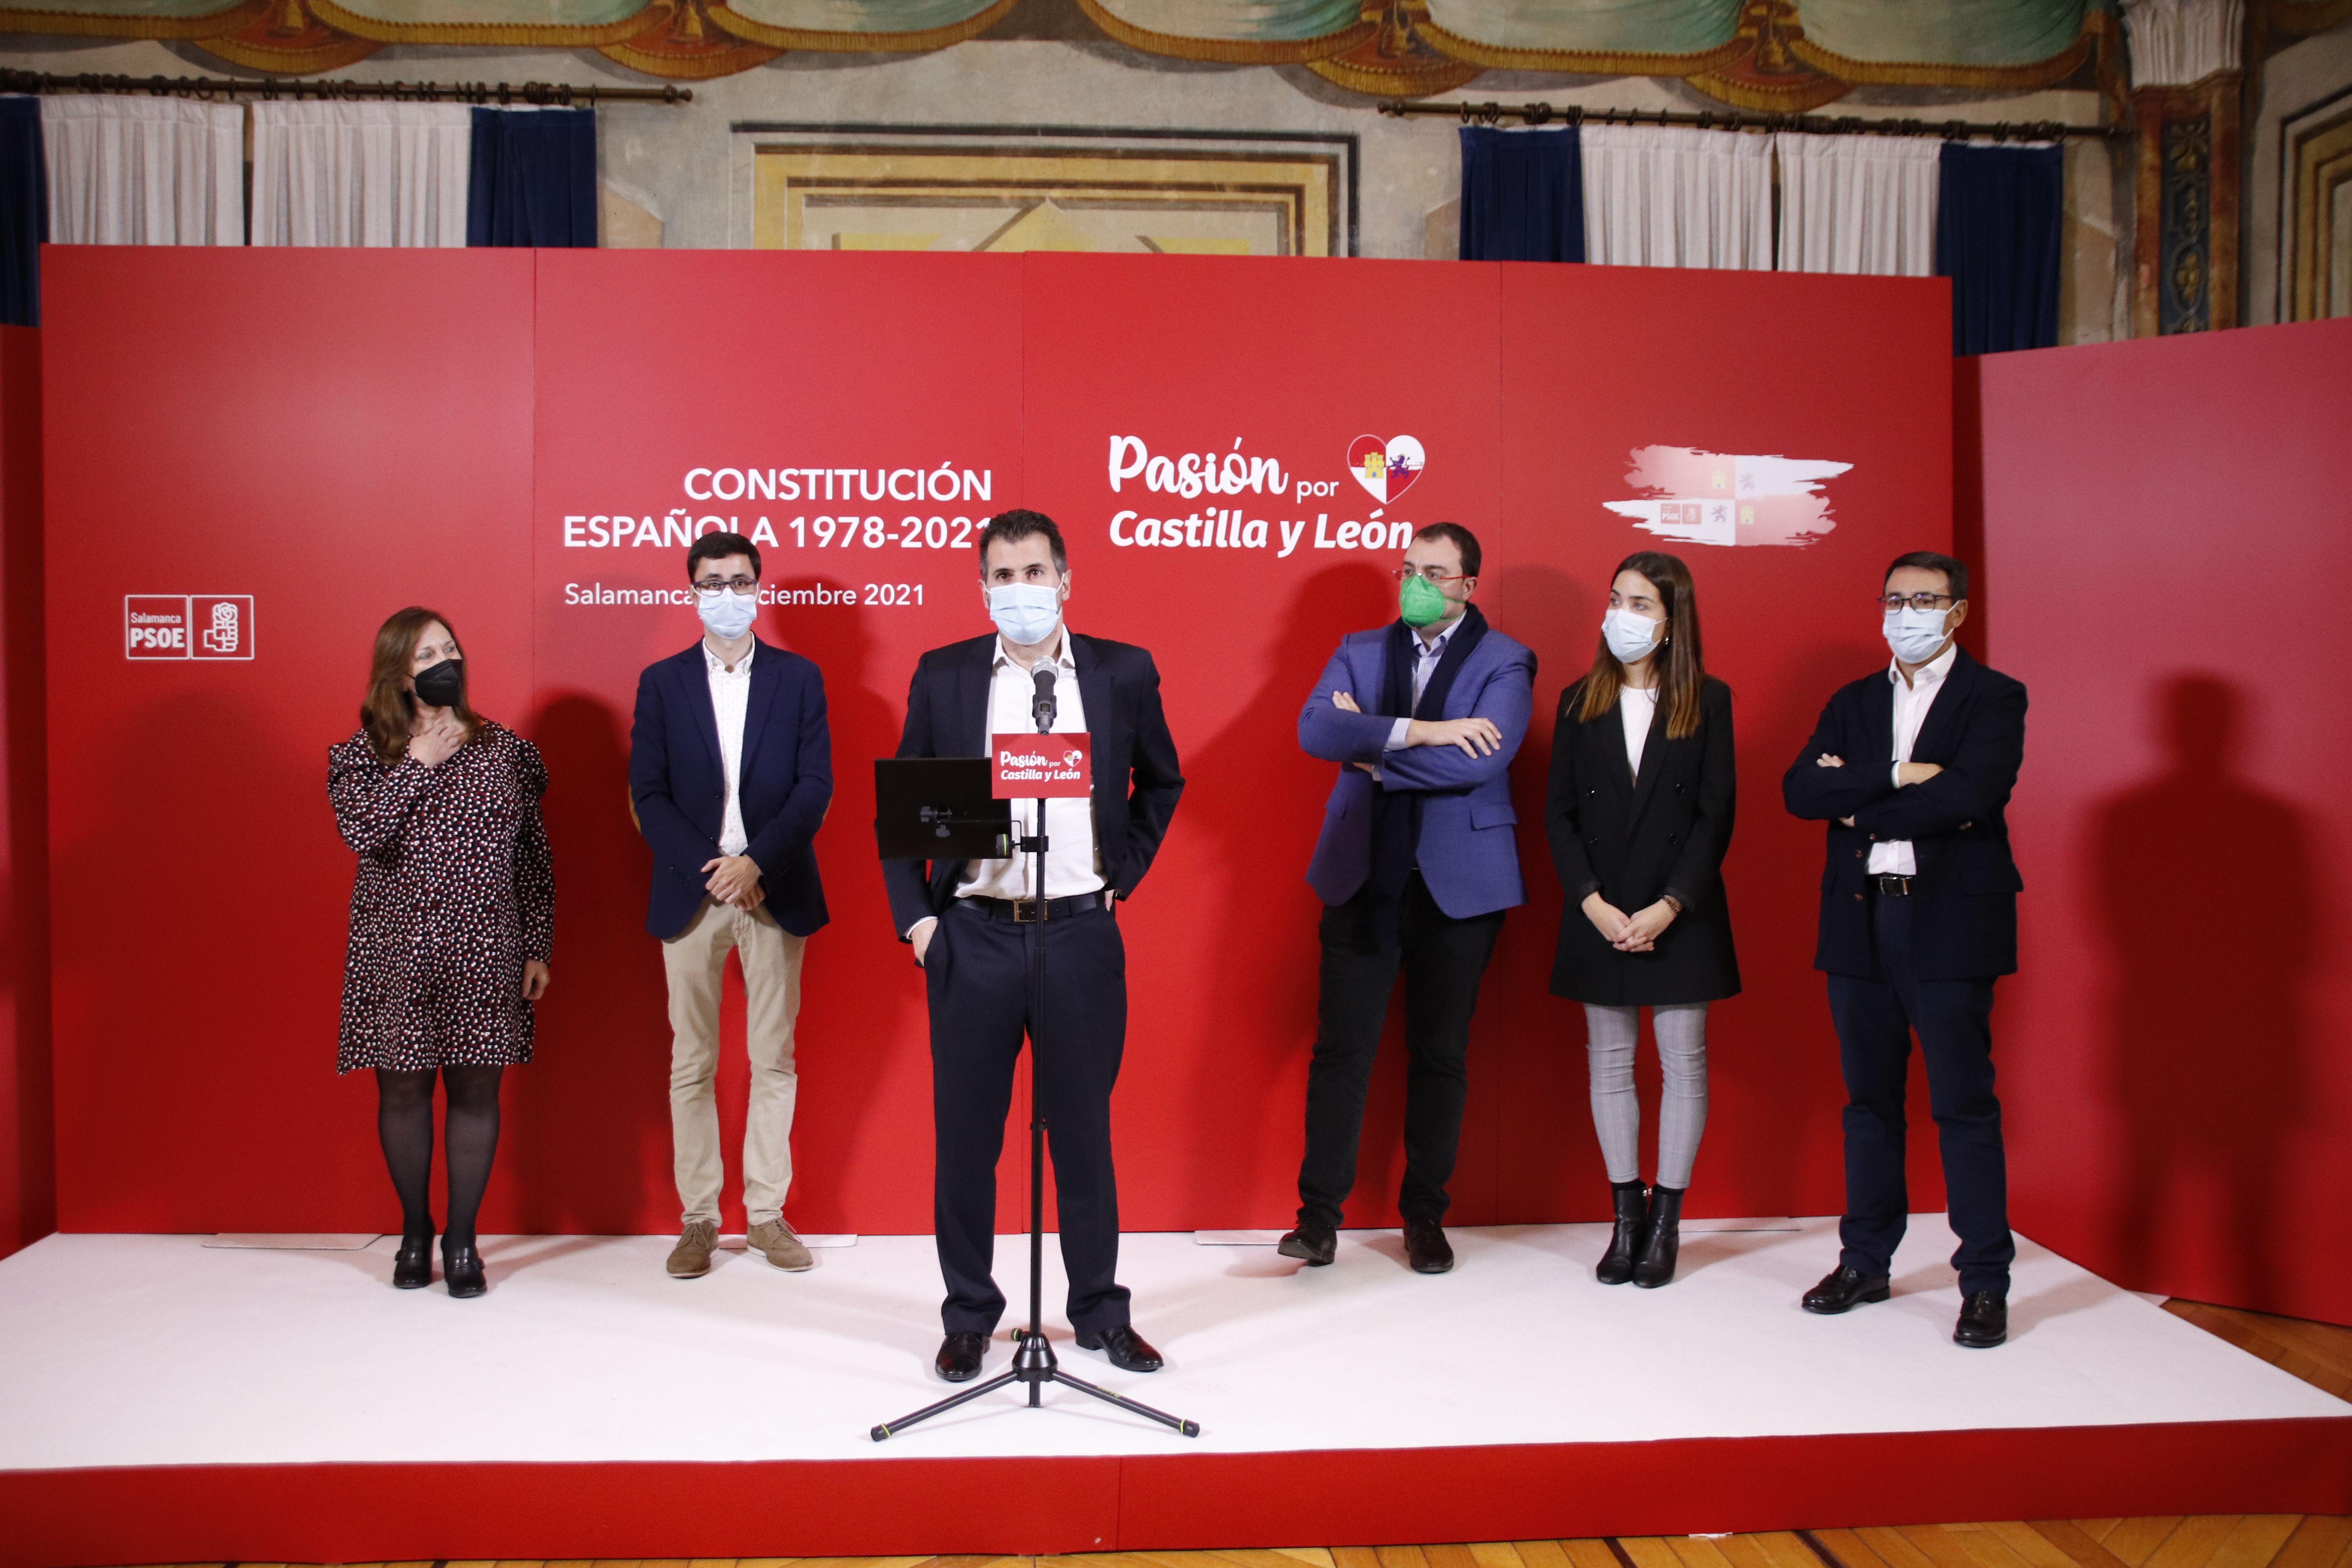 Acto conmemorativo del aniversario de la Constitución organizado por el PSOE | Fotos: Andrea M